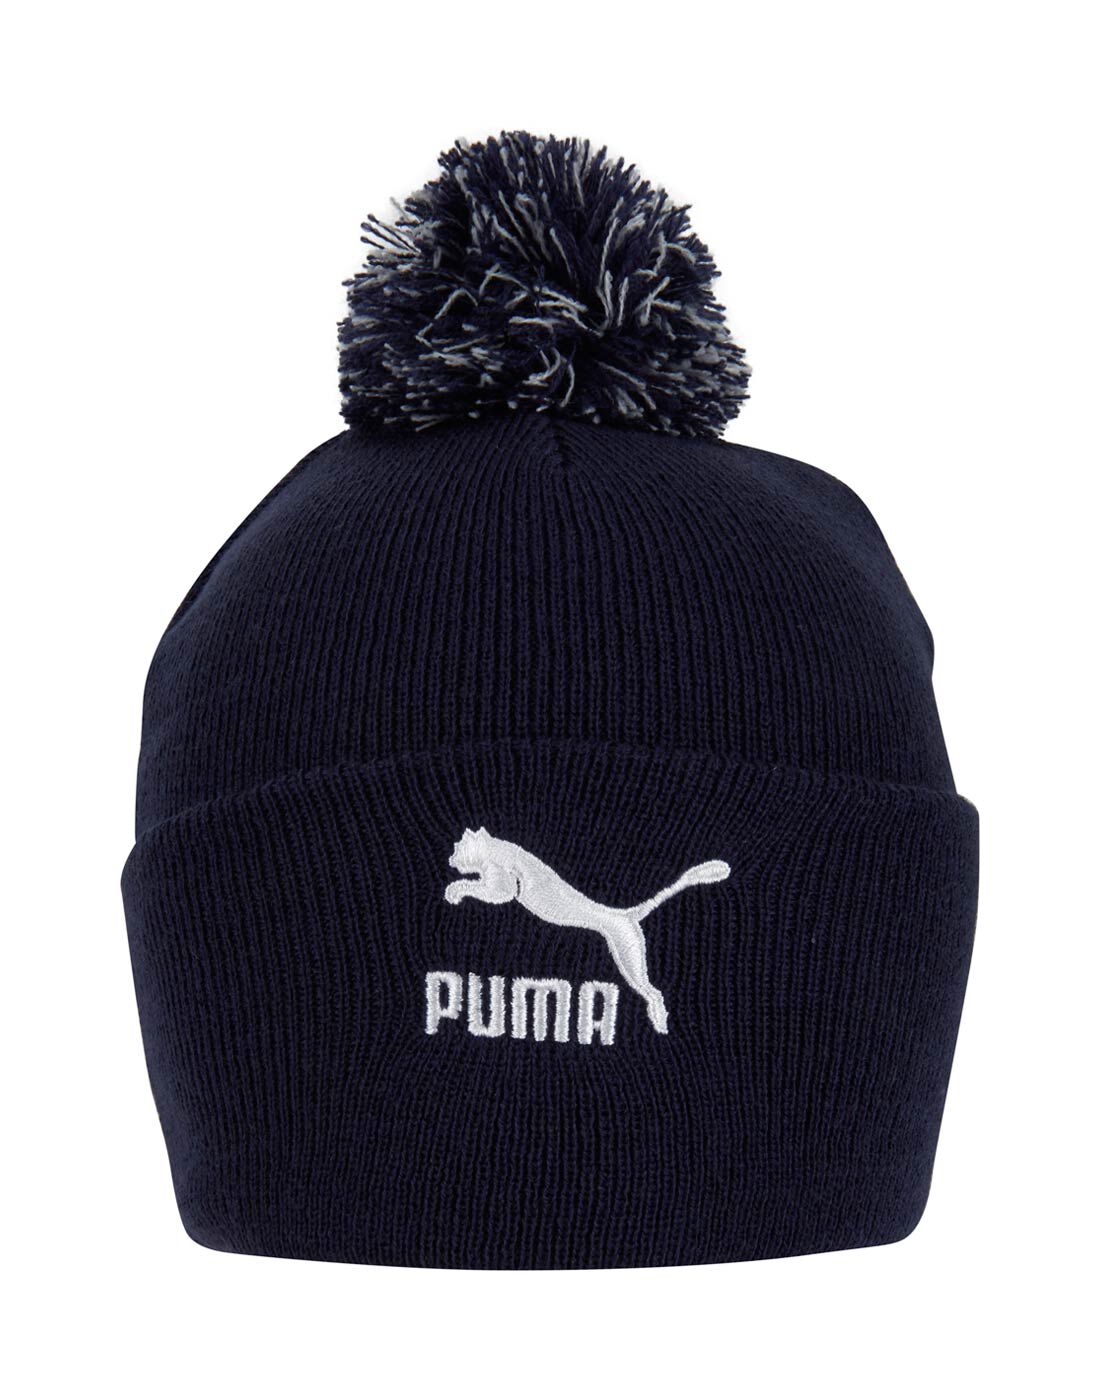 Puma Pom Pom Beanie | Life Style Sports